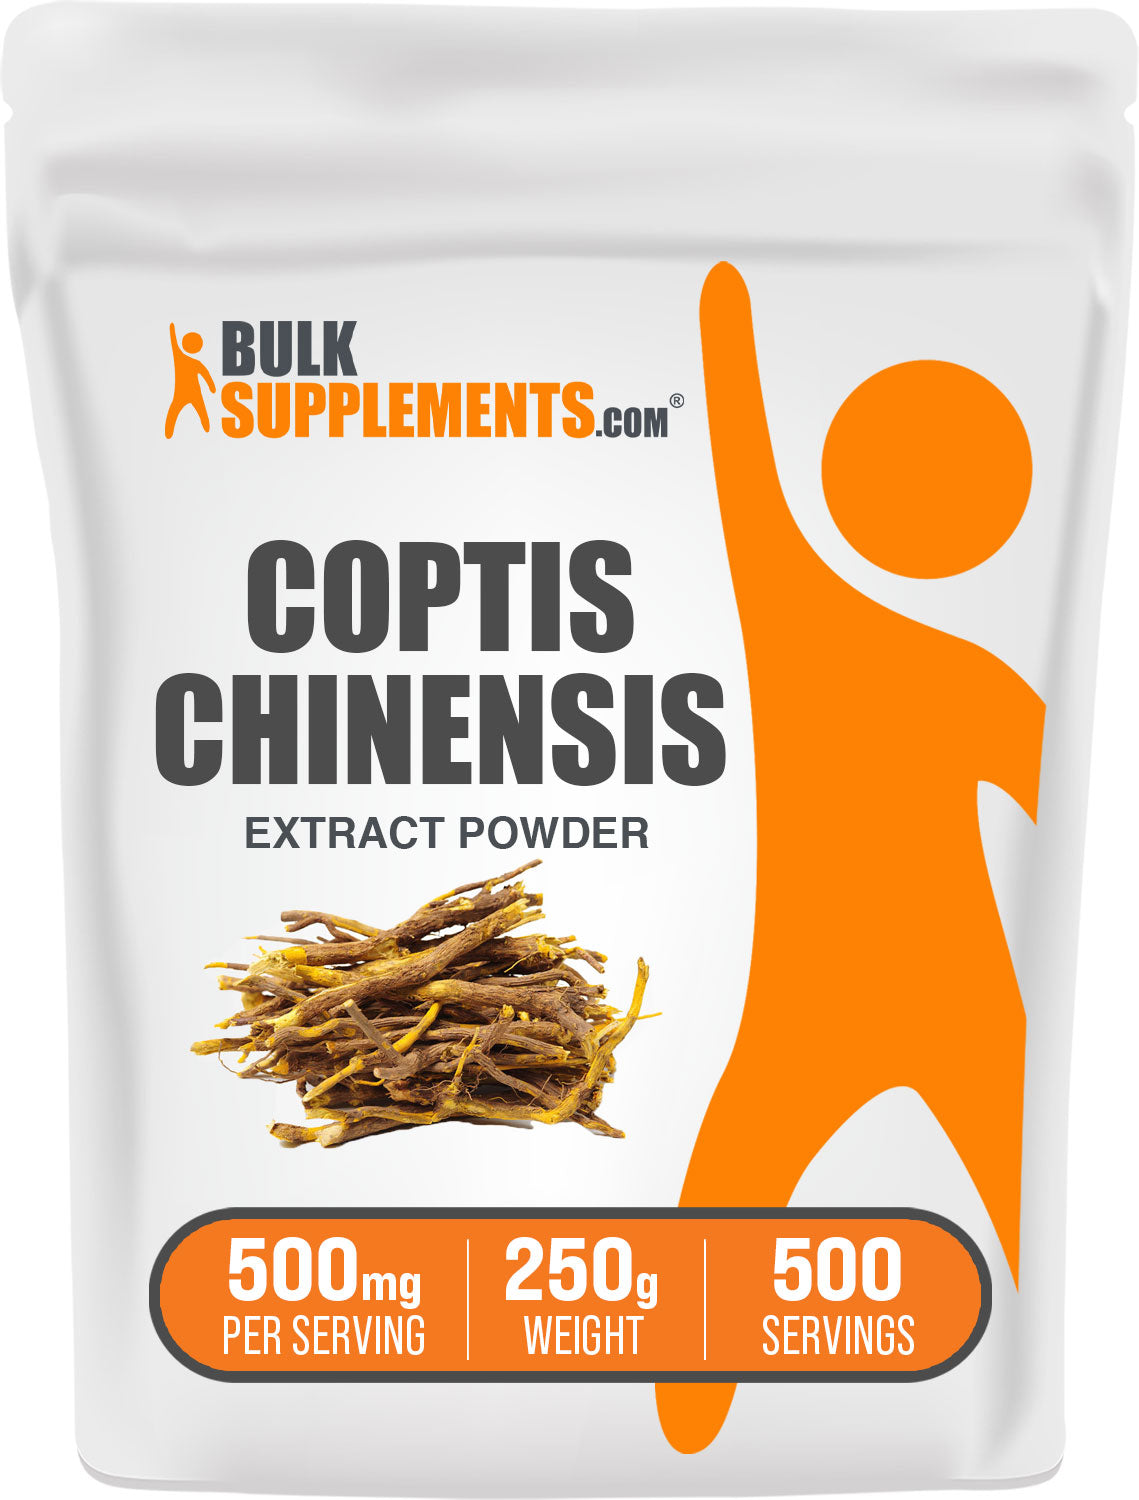 250g of coptis chinensis